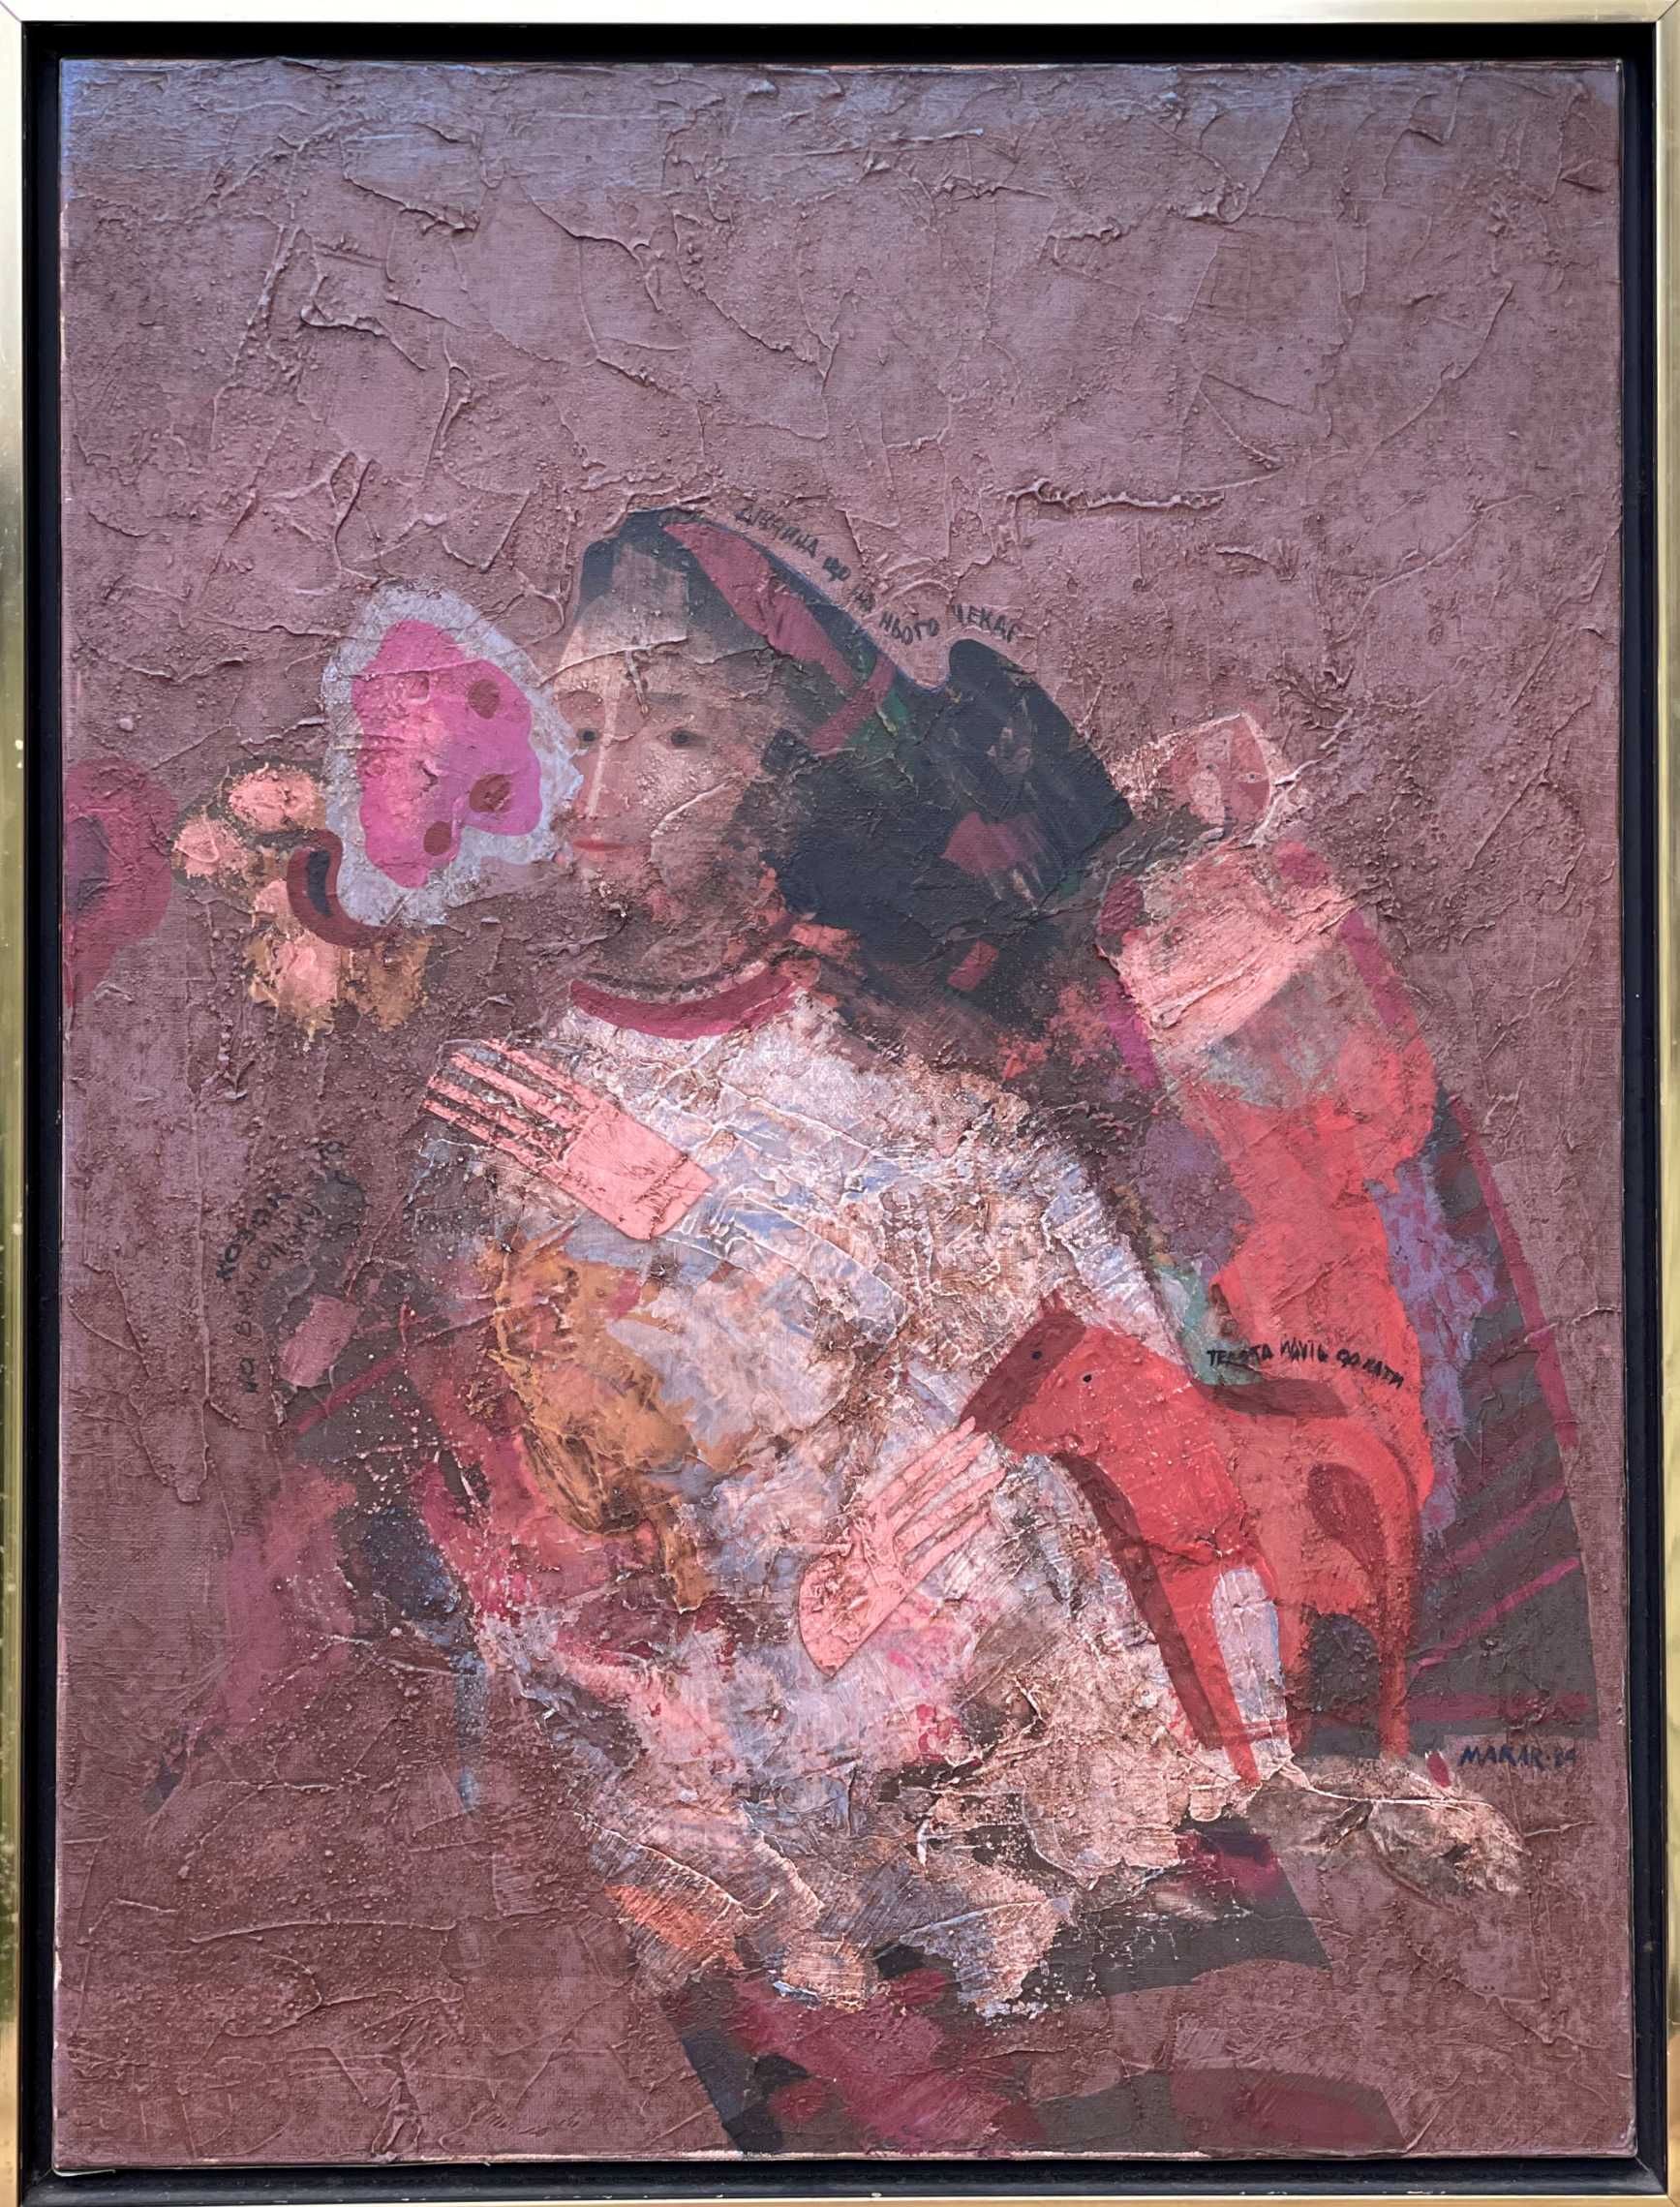 Volodymyr Makarenko, Waiting, 1984, oil on canvas, 61x46cm